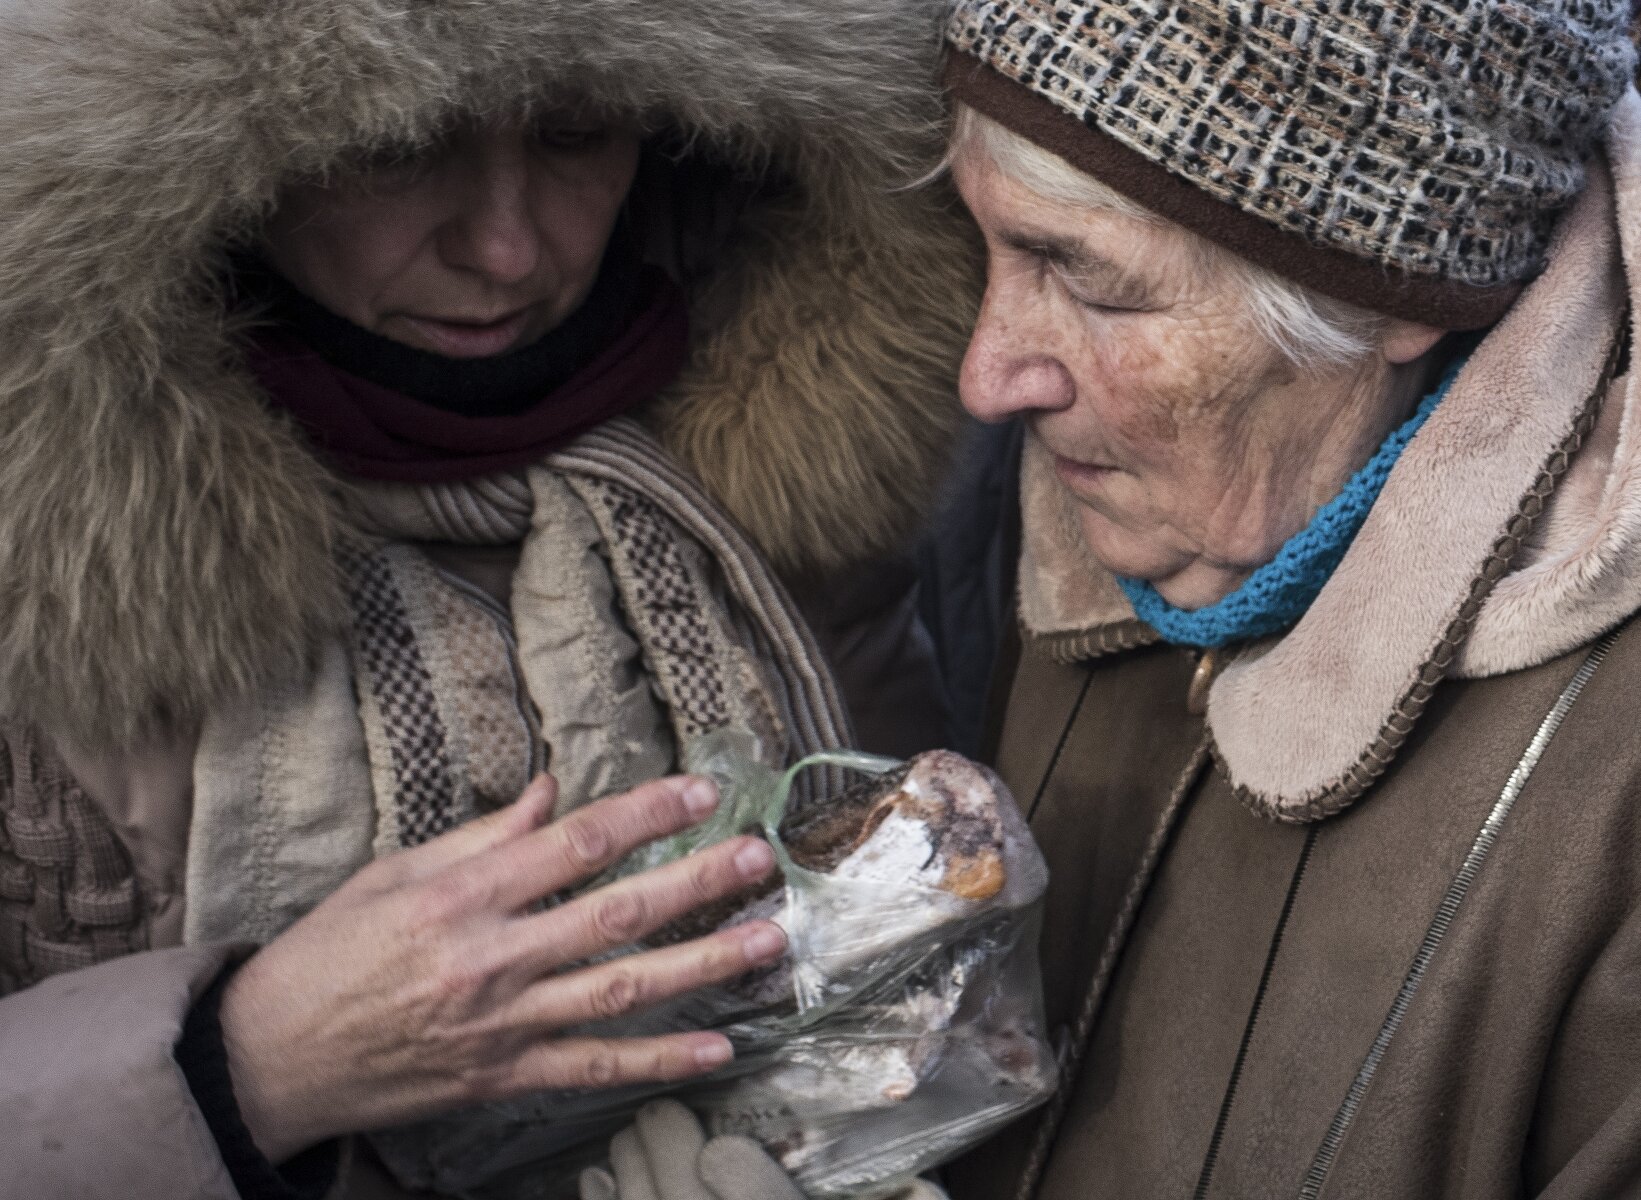 <p>Женщины держат в руках бесплатную еду в одном из центров по оказанию гуманитарной помощи в Авдеевке. Замерзшие жители&nbsp;города&nbsp;без электричества и отопления&nbsp;начали собираться в специально организованных гуманитарных центрах, чтобы получить пищу и согреться.<br />
&nbsp;</p>